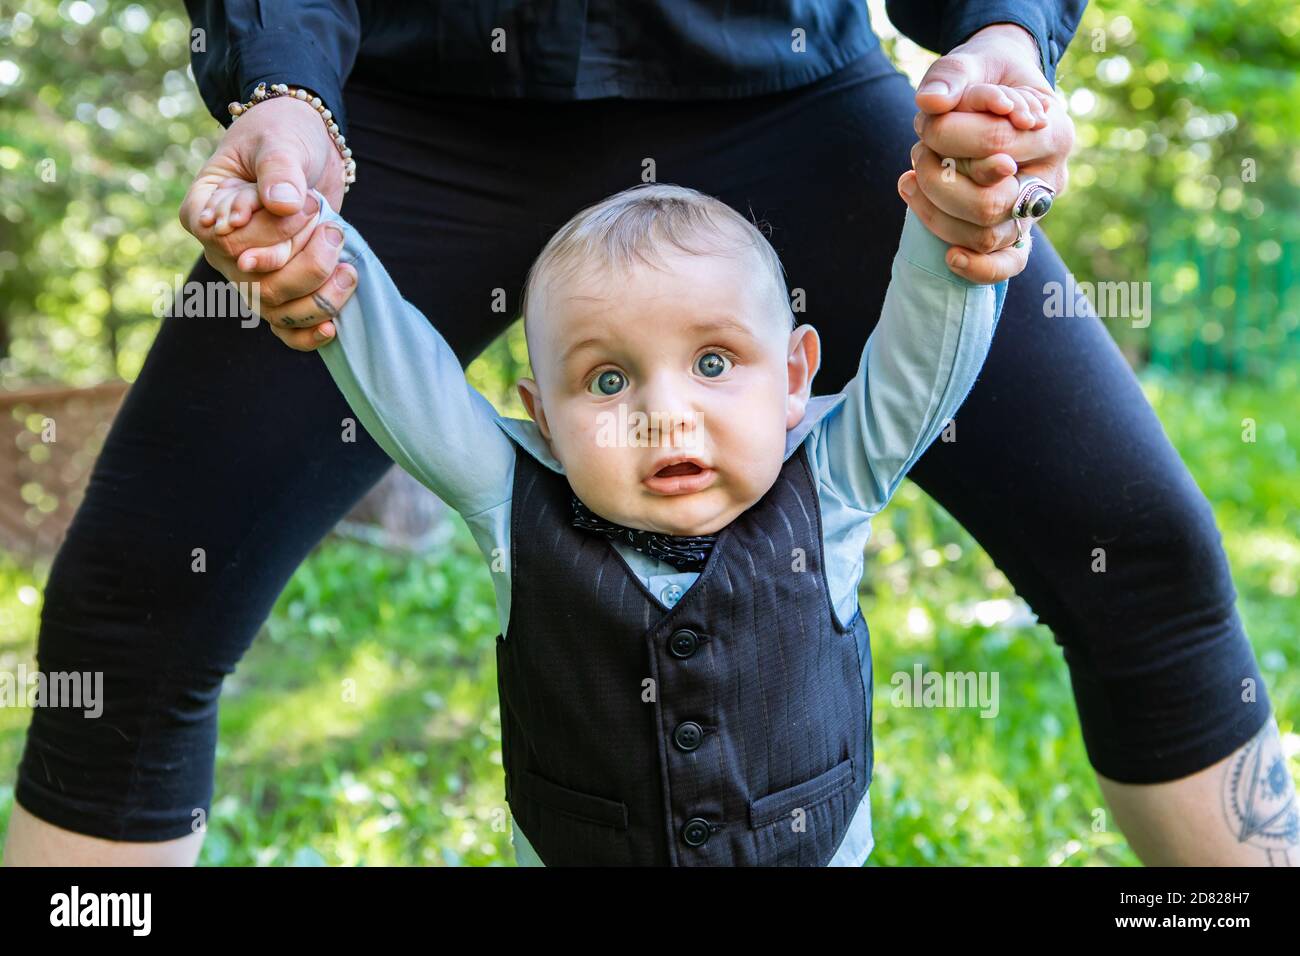 Retrato del bebé recién nacido de pie con el apoyo para las manos de los padres ropa formal posando para fotofoot en el jardín al aire libre Foto de stock